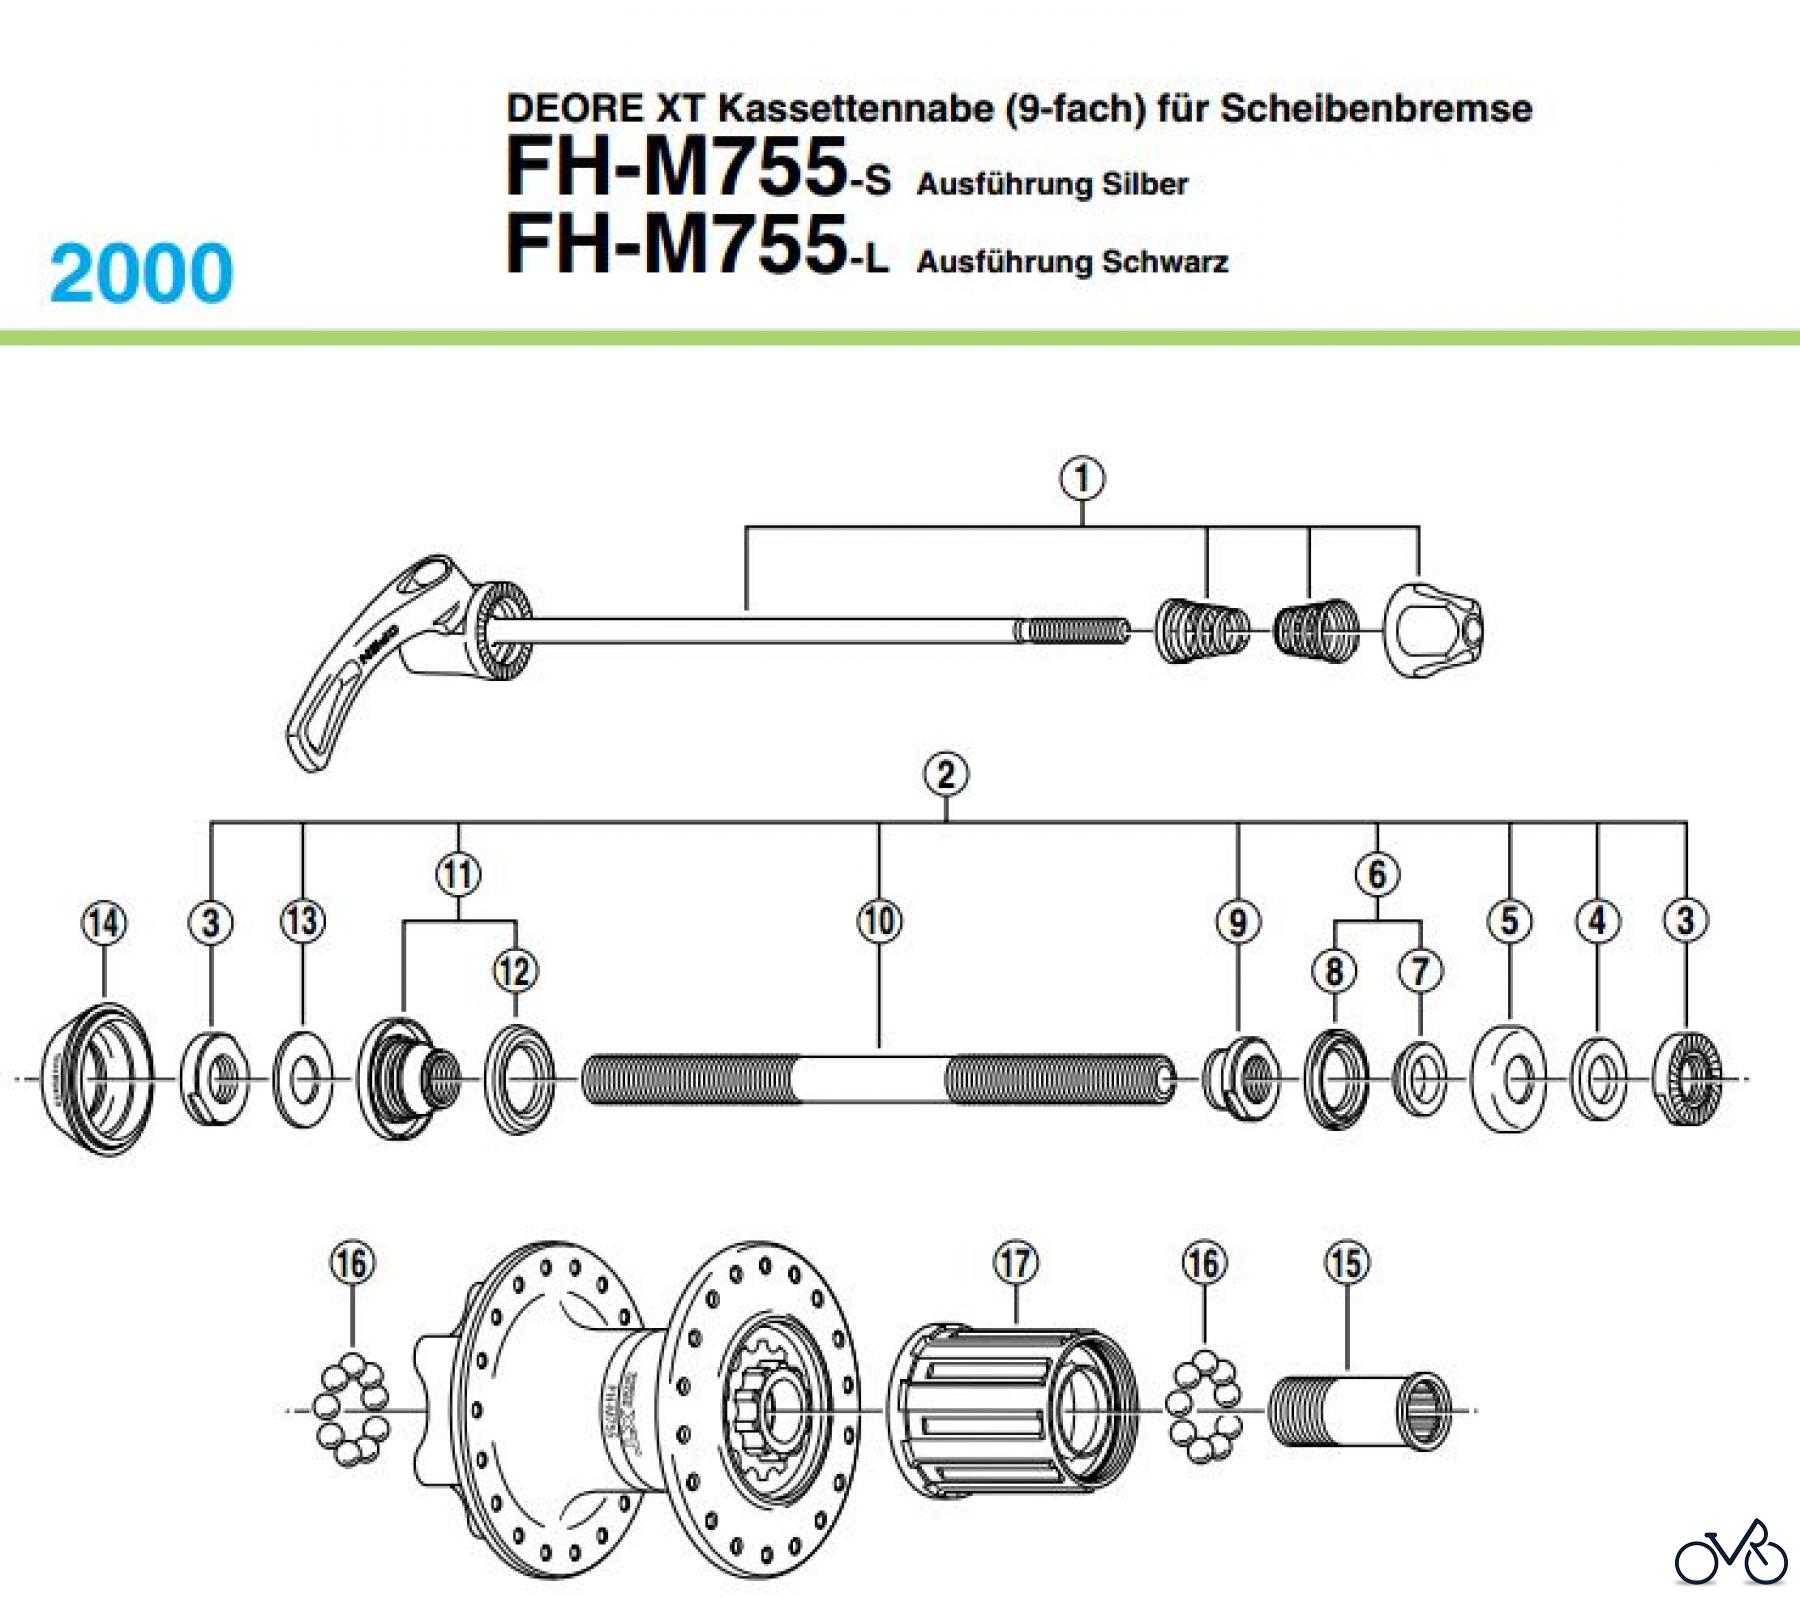  Shimano FH Free Hub - Freilaufnabe FH-M755 DEORE XT Kassettennabe (9-fach) für Scheibenbremse